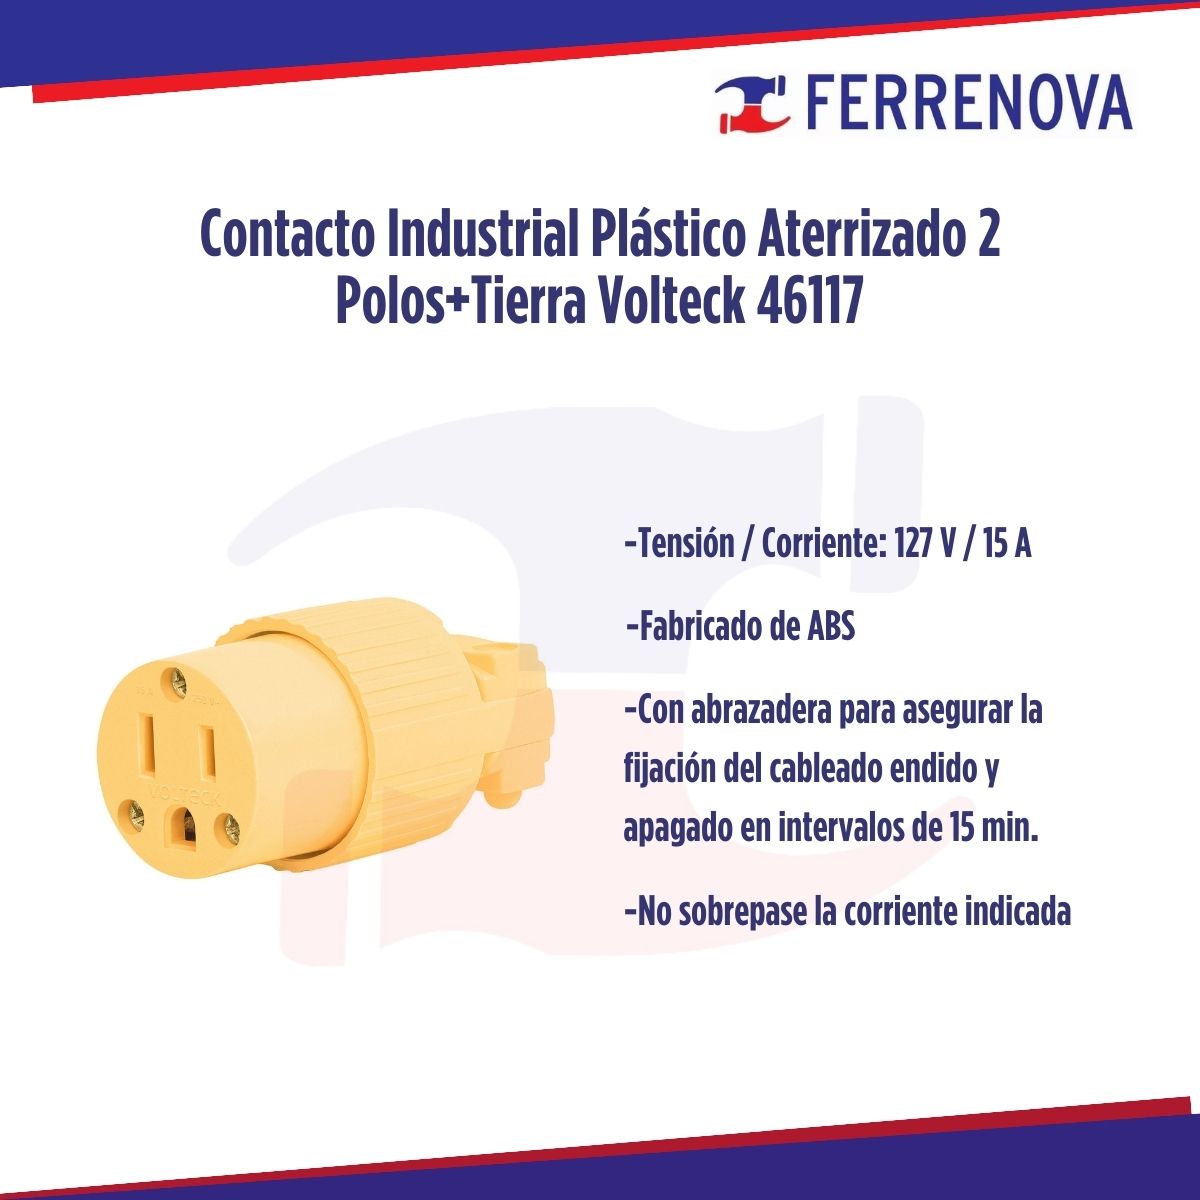 Contacto Industrial Plástico Aterrizado 2 Polos+Tierra Volteck 46117